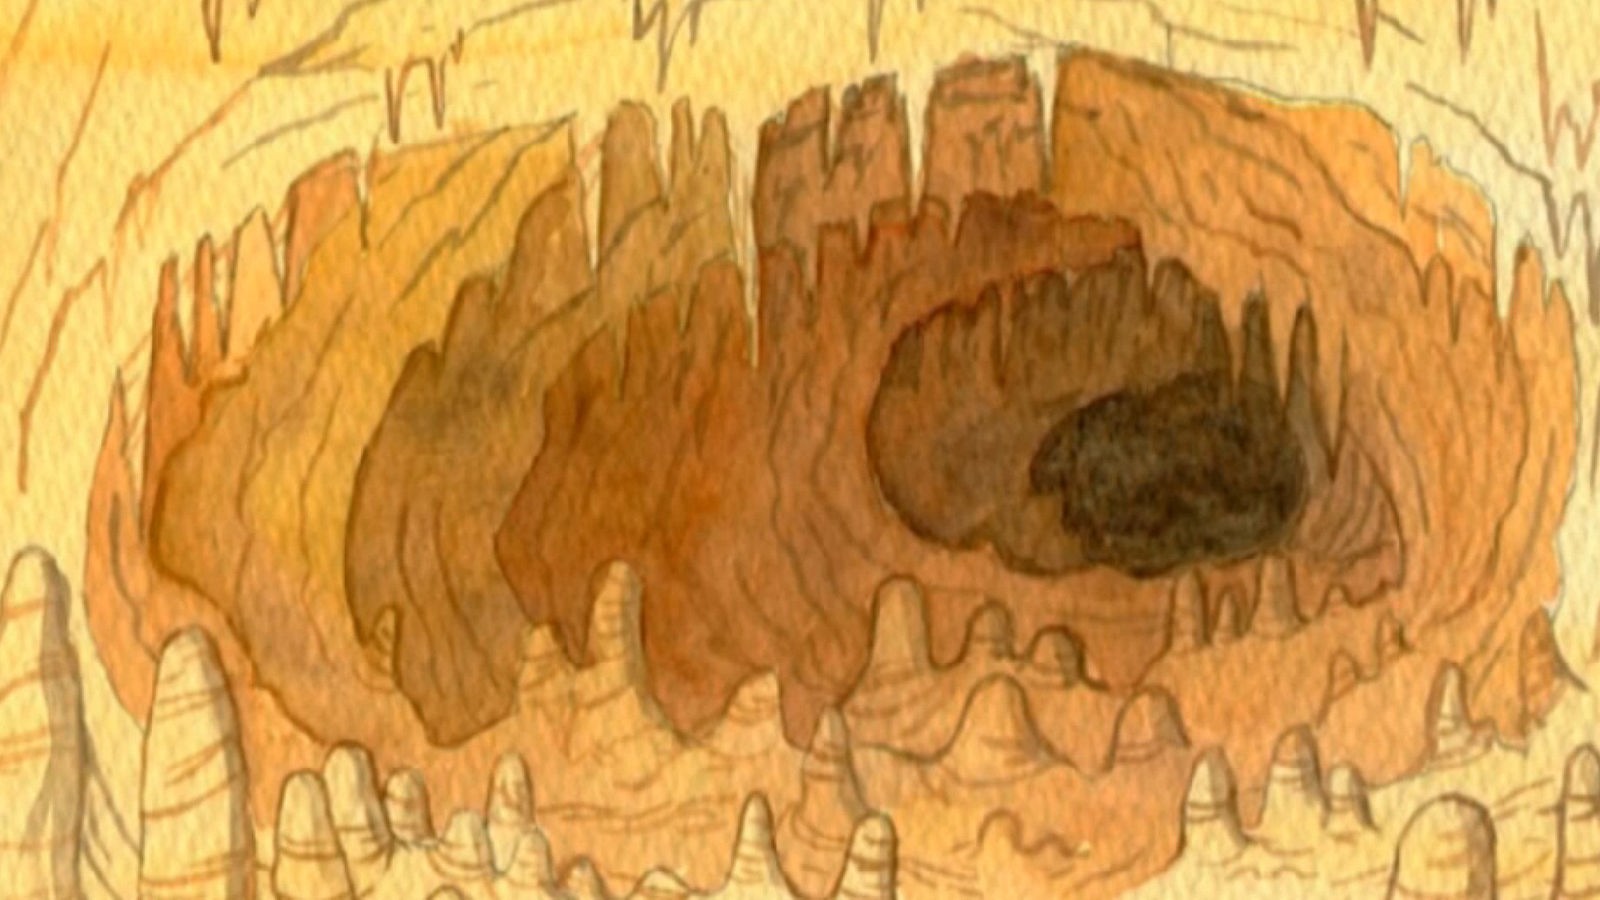 Die Höhlen der Schwäbischen Alb sind so genannte Karsthöhlen, also Höhlen, die in Kalkgestein entstanden. Woher das Gestein kommt und wie sich darin im Laufe der Jahrtausende Höhlen bilden können, zeigen wir anschaulich in unserer Animation.